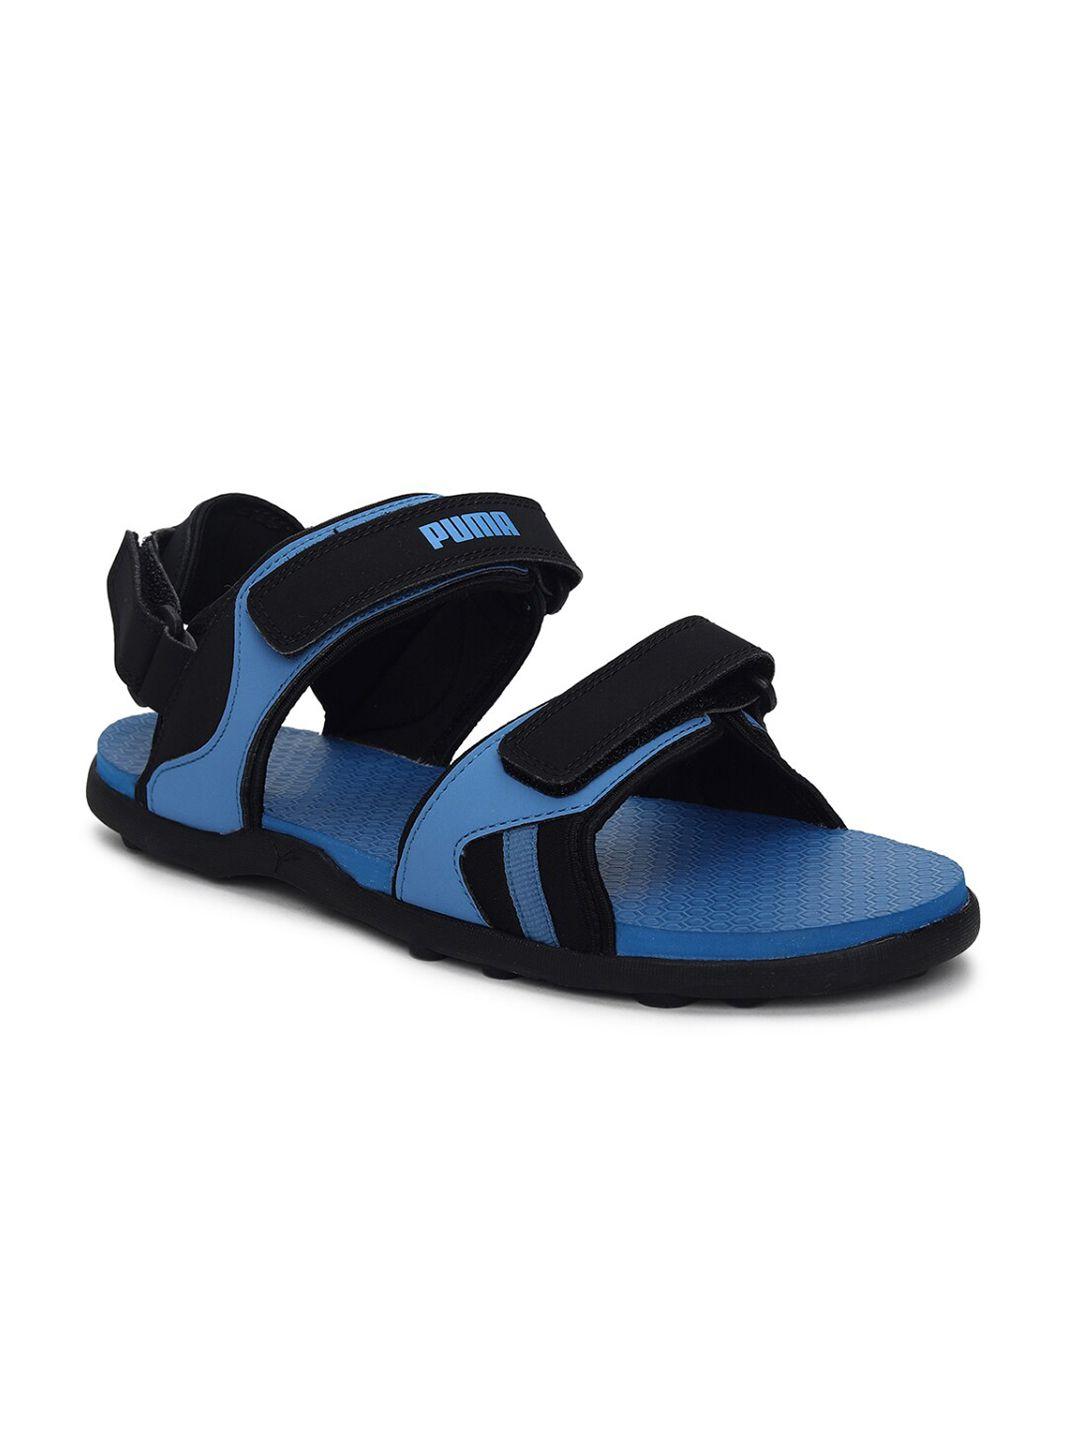 Puma Men Blue & Black Comfort Sandals